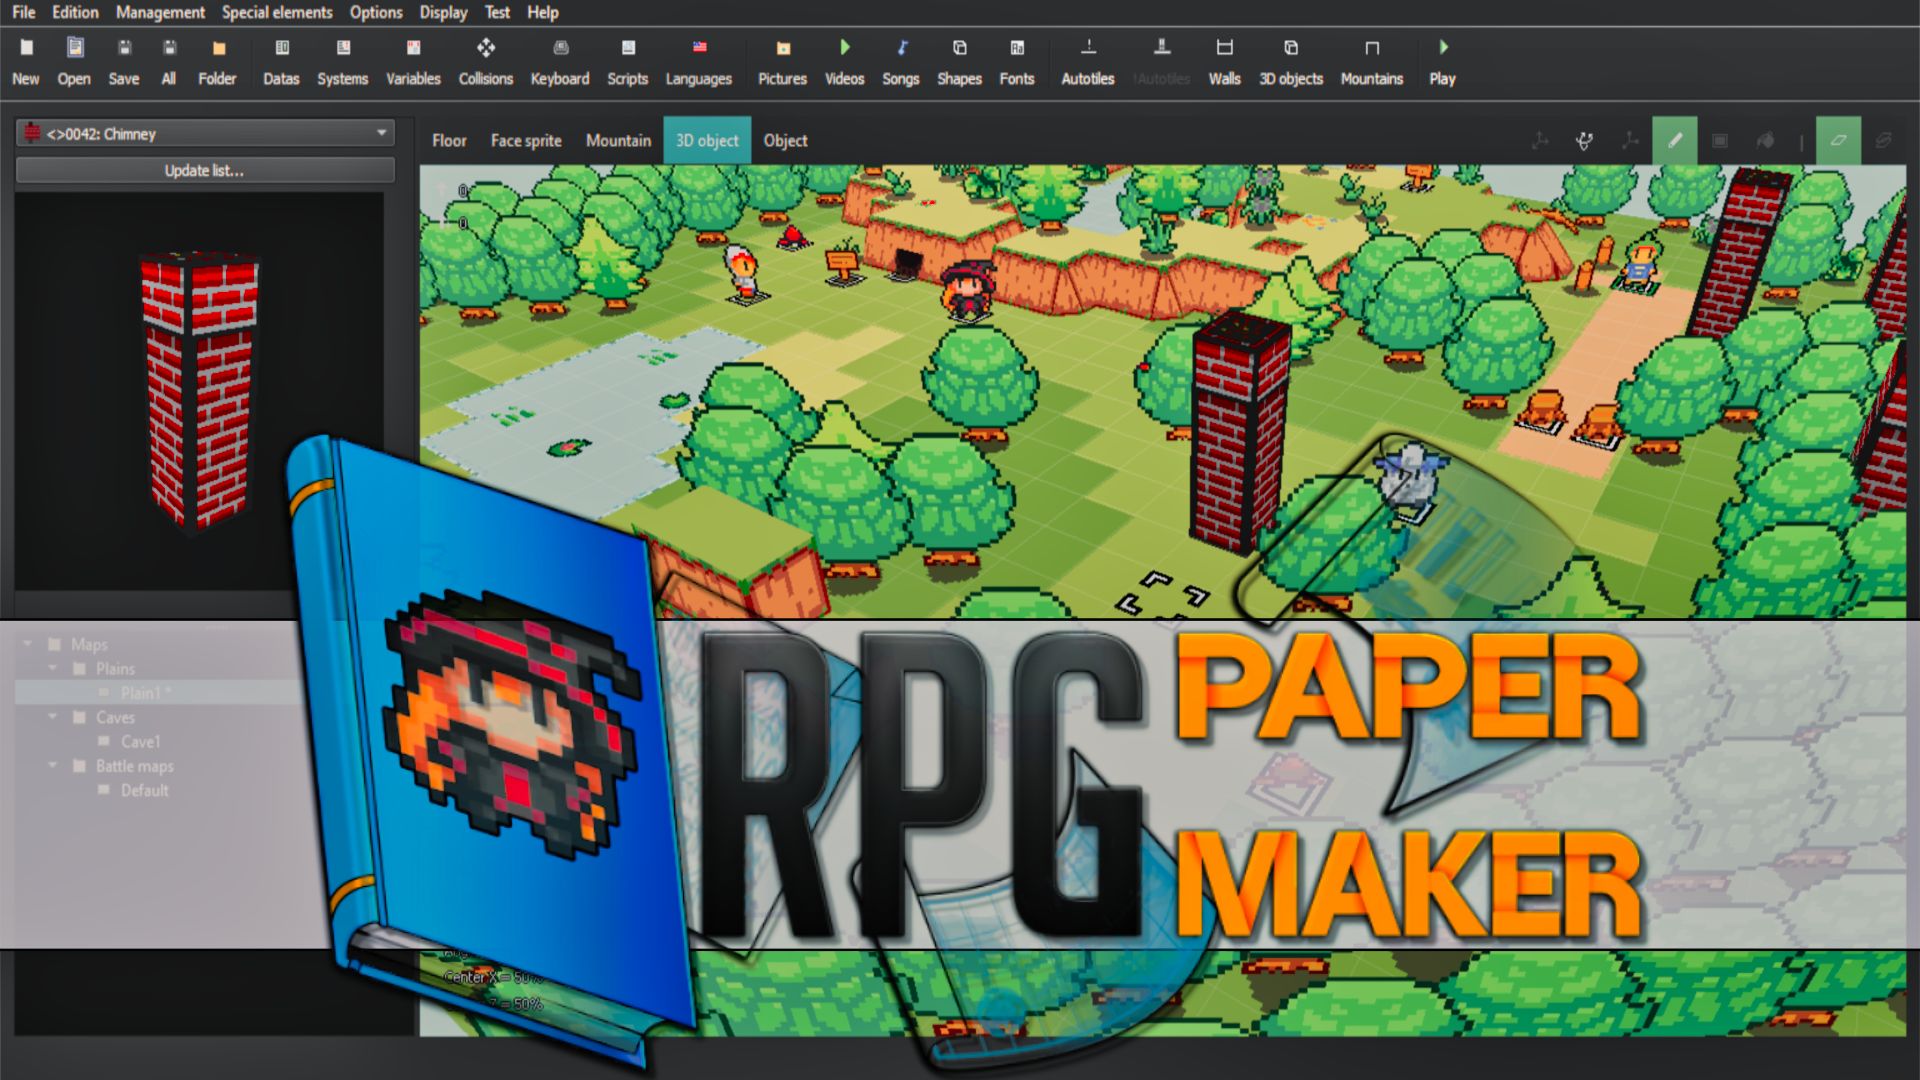 RPG Paper Maker on Steam